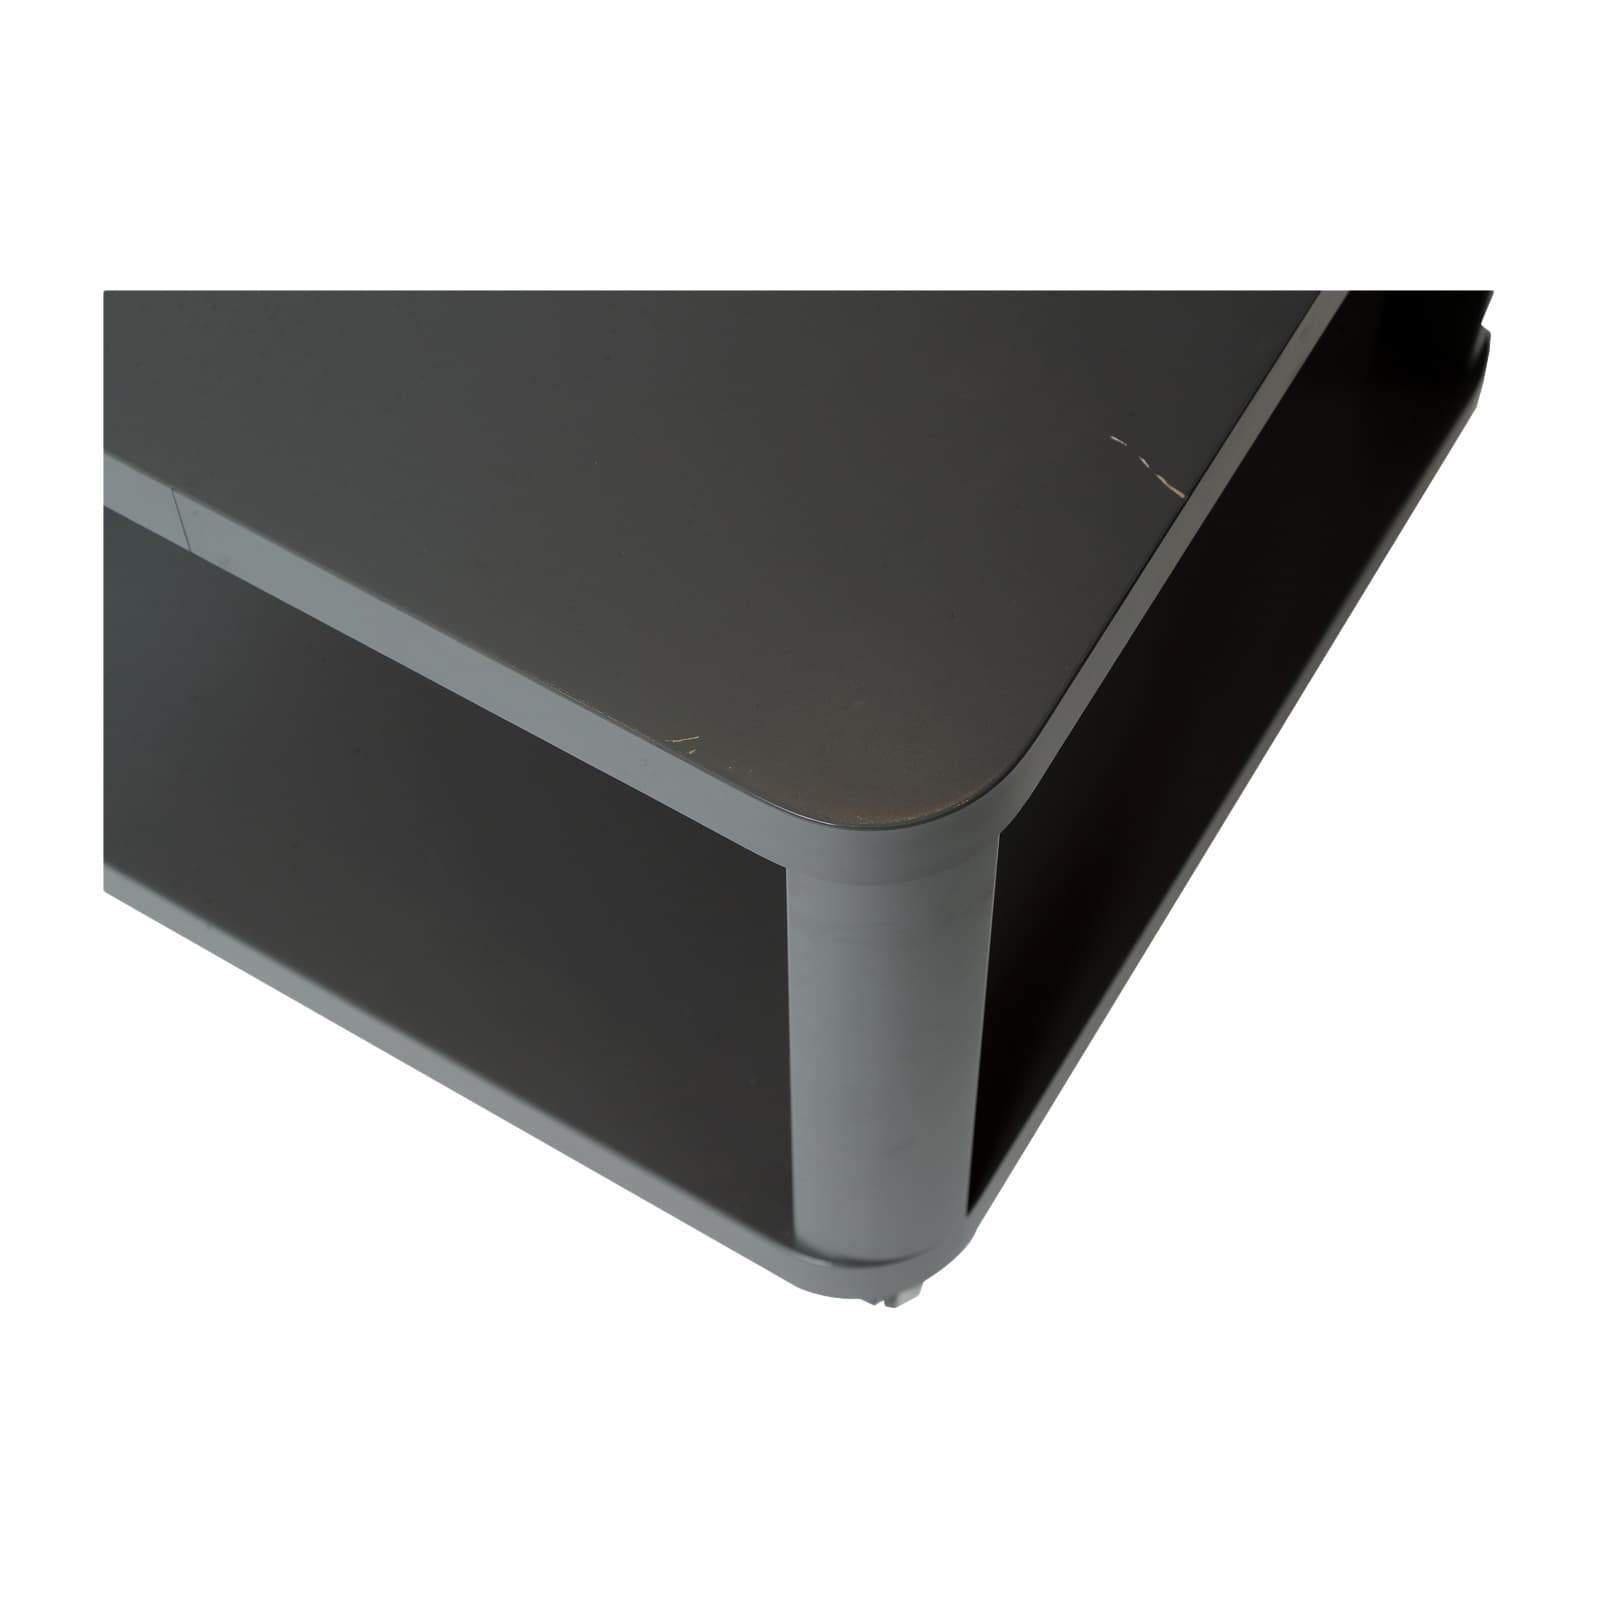 Table basse Ikea d’occasion - 50 x 50 cm - Gris foncé-Bluedigo